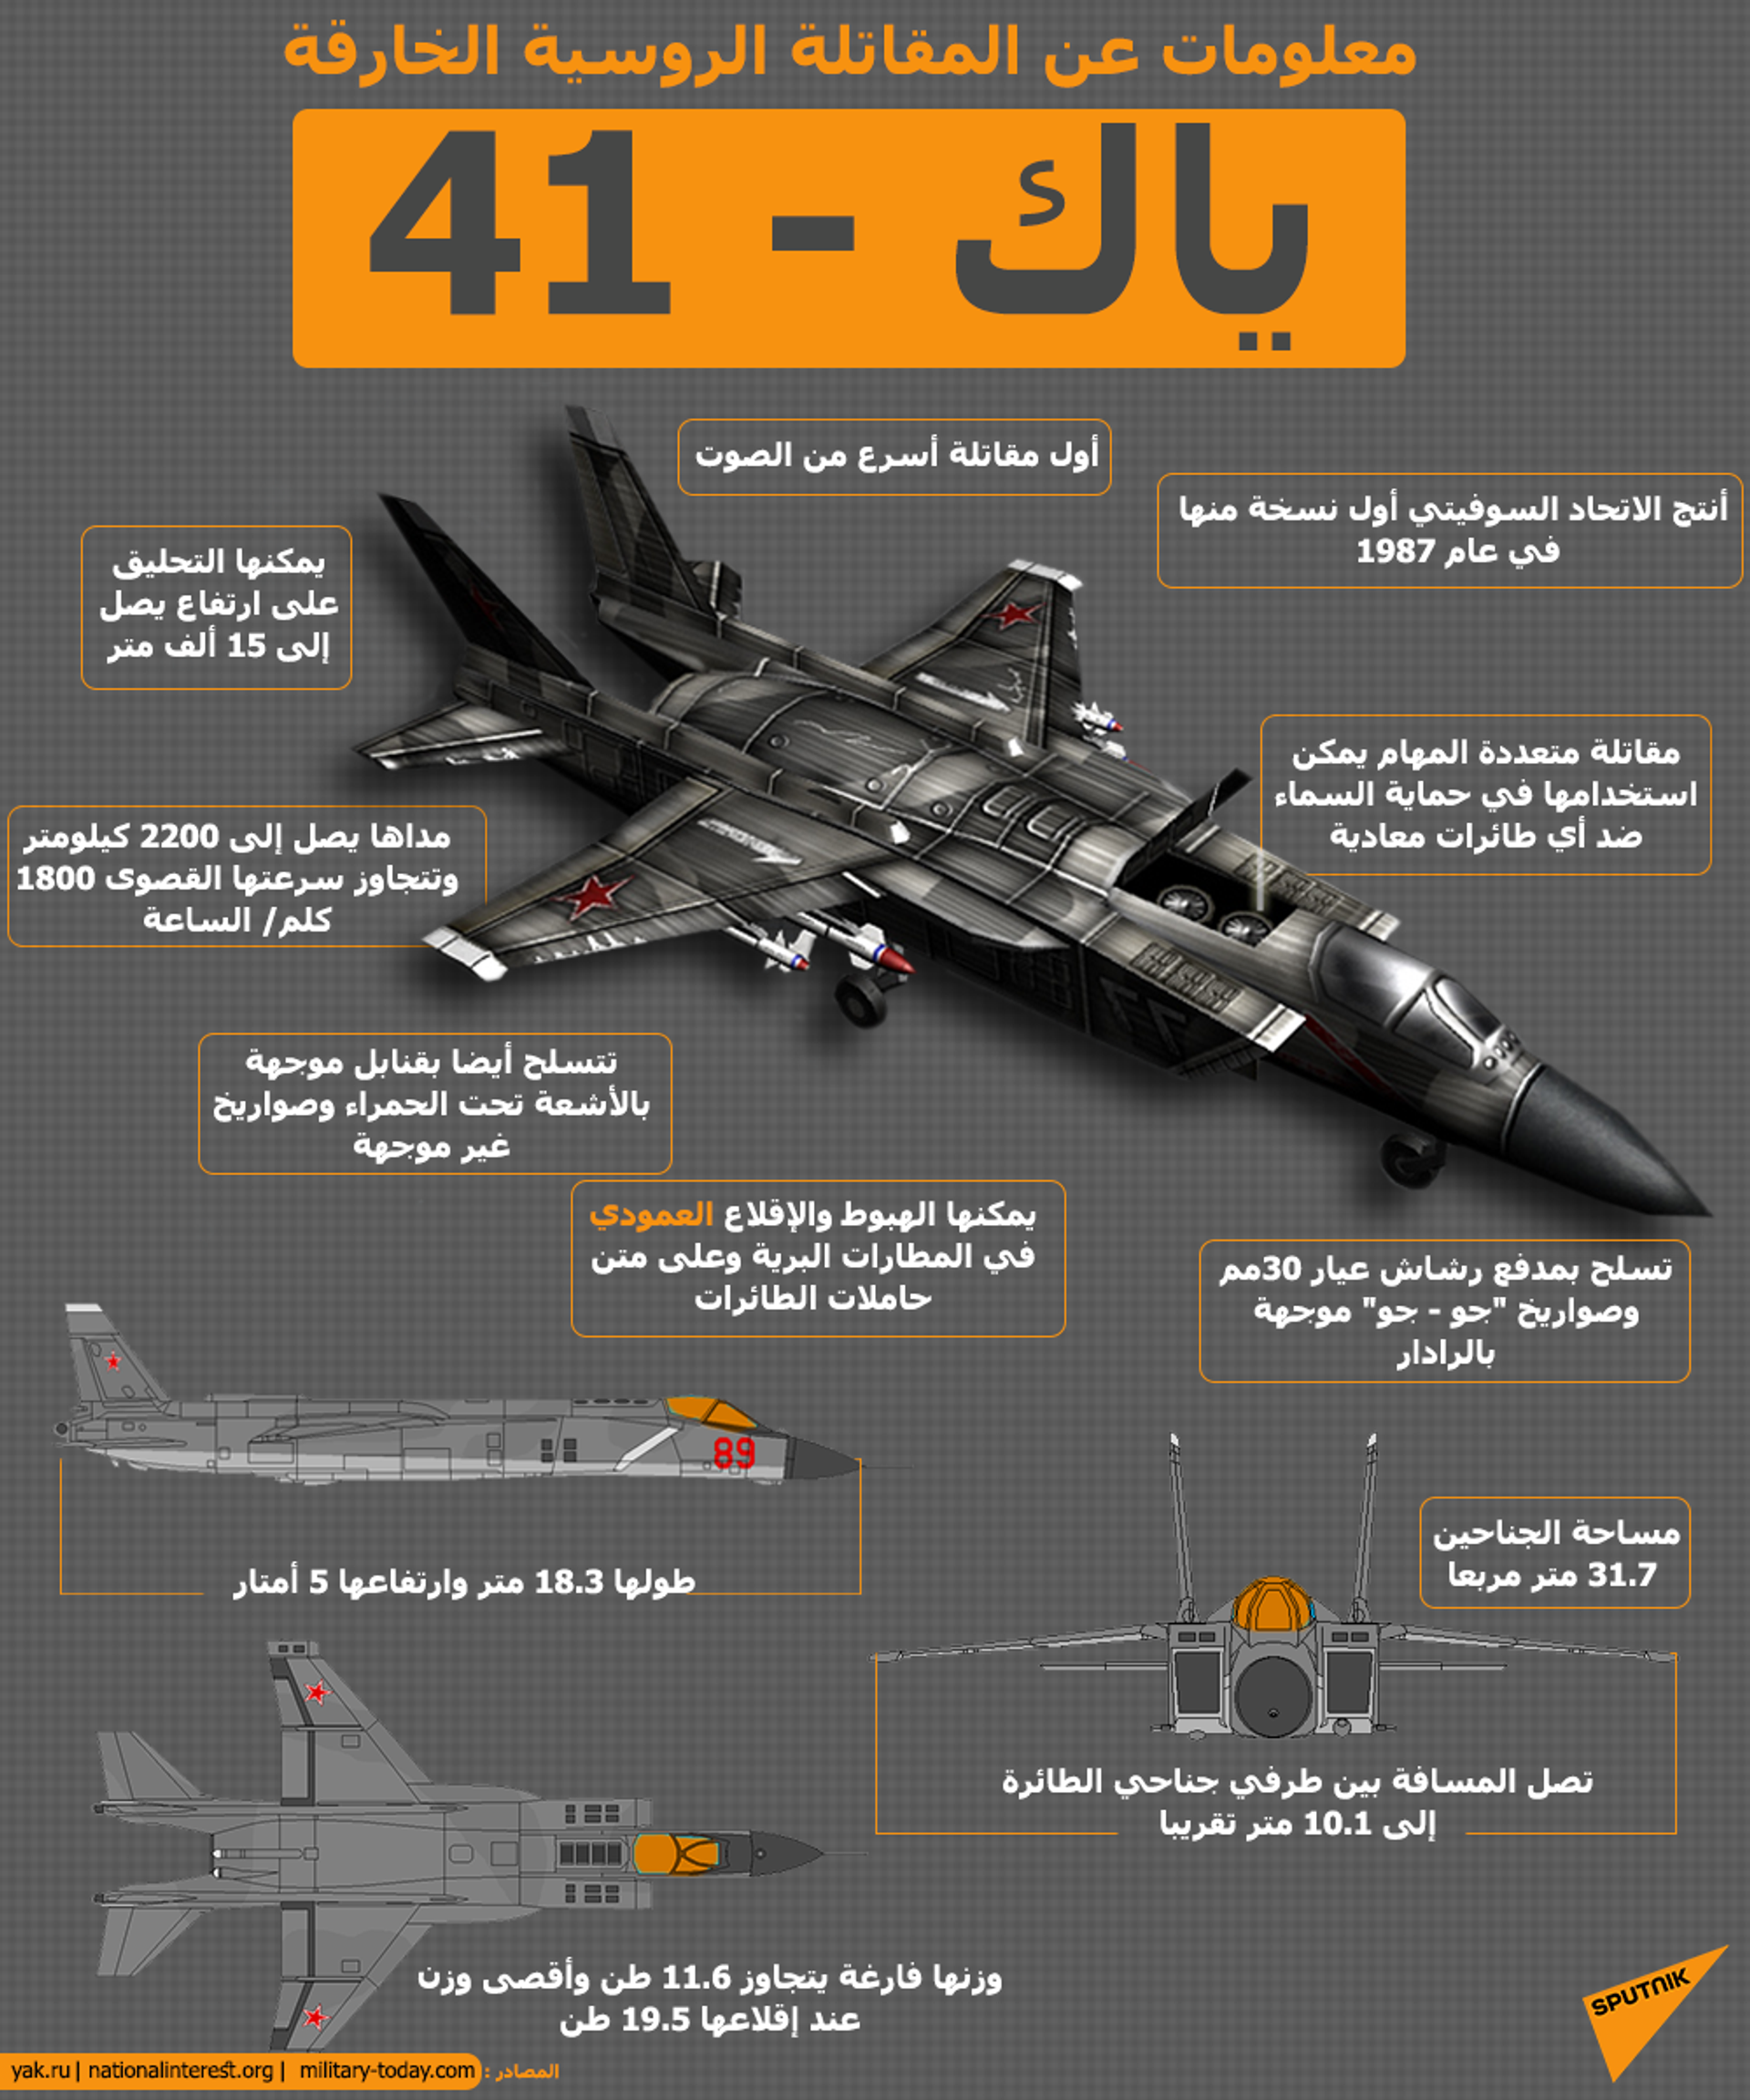 نفذت 14 ألف مهمة وأطلقت 250 ألف قذيفة… مقاتلات إف - 18 الأمريكية تخرج من الخدمة - سبوتنيك عربي, 1920, 06.03.2021